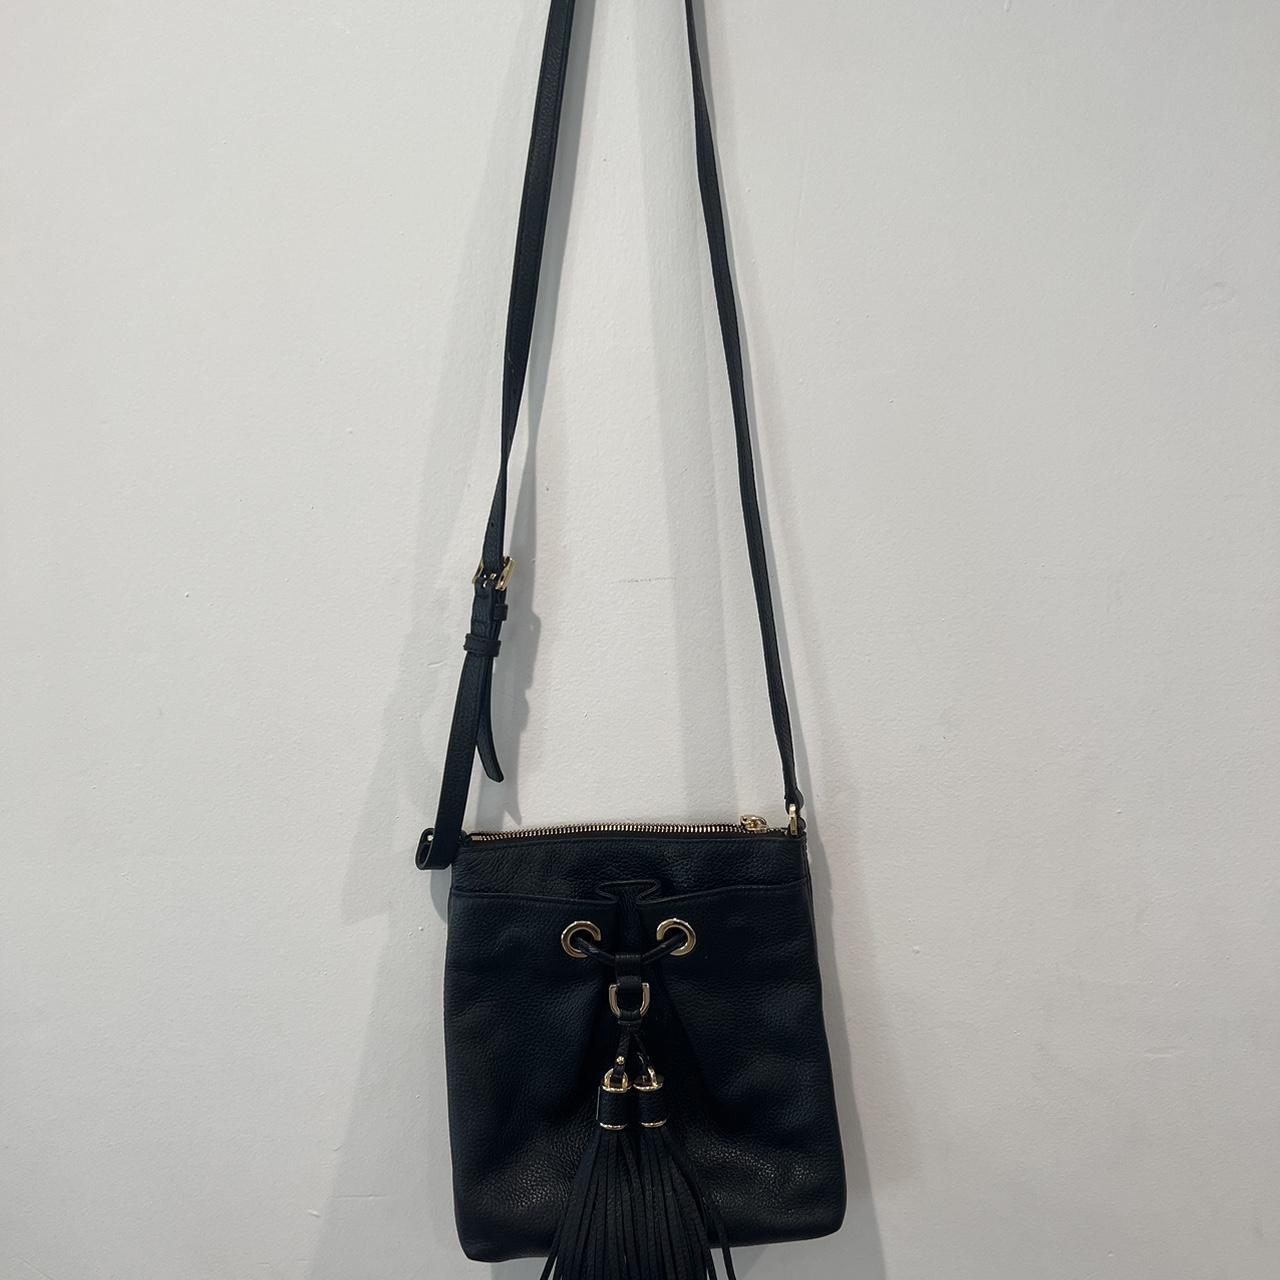 Michel Kors crossbody purse 🤎 the purse is in great... - Depop